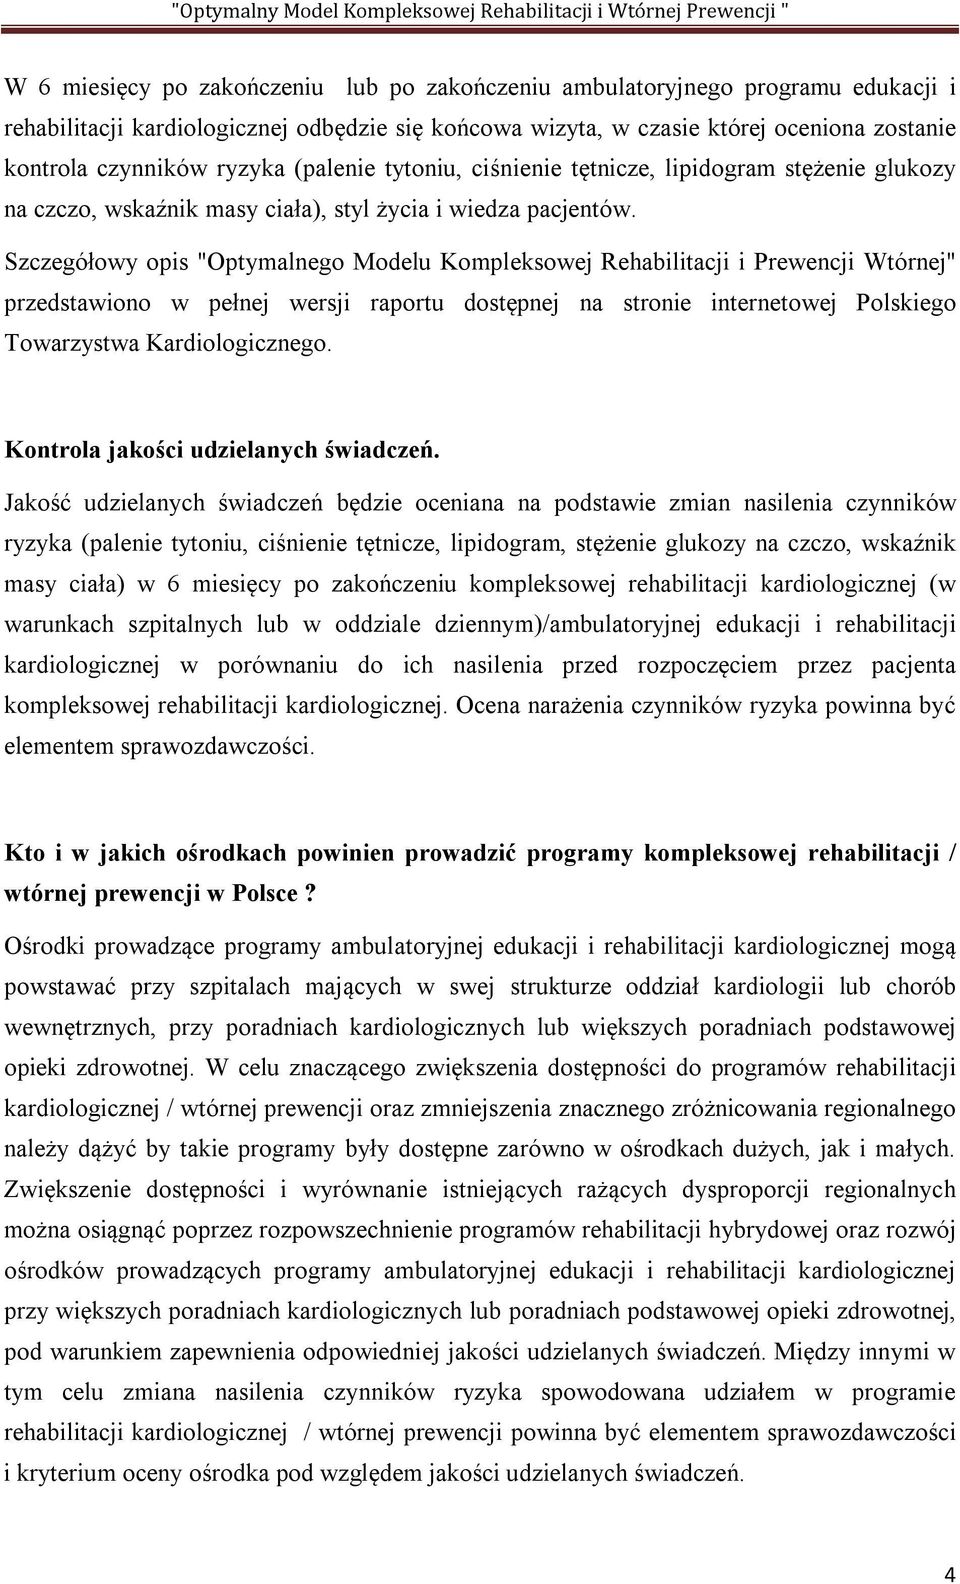 Szczegółowy opis "Optymalnego Modelu Kompleksowej Rehabilitacji i Prewencji Wtórnej" przedstawiono w pełnej wersji raportu dostępnej na stronie internetowej Polskiego Towarzystwa Kardiologicznego.